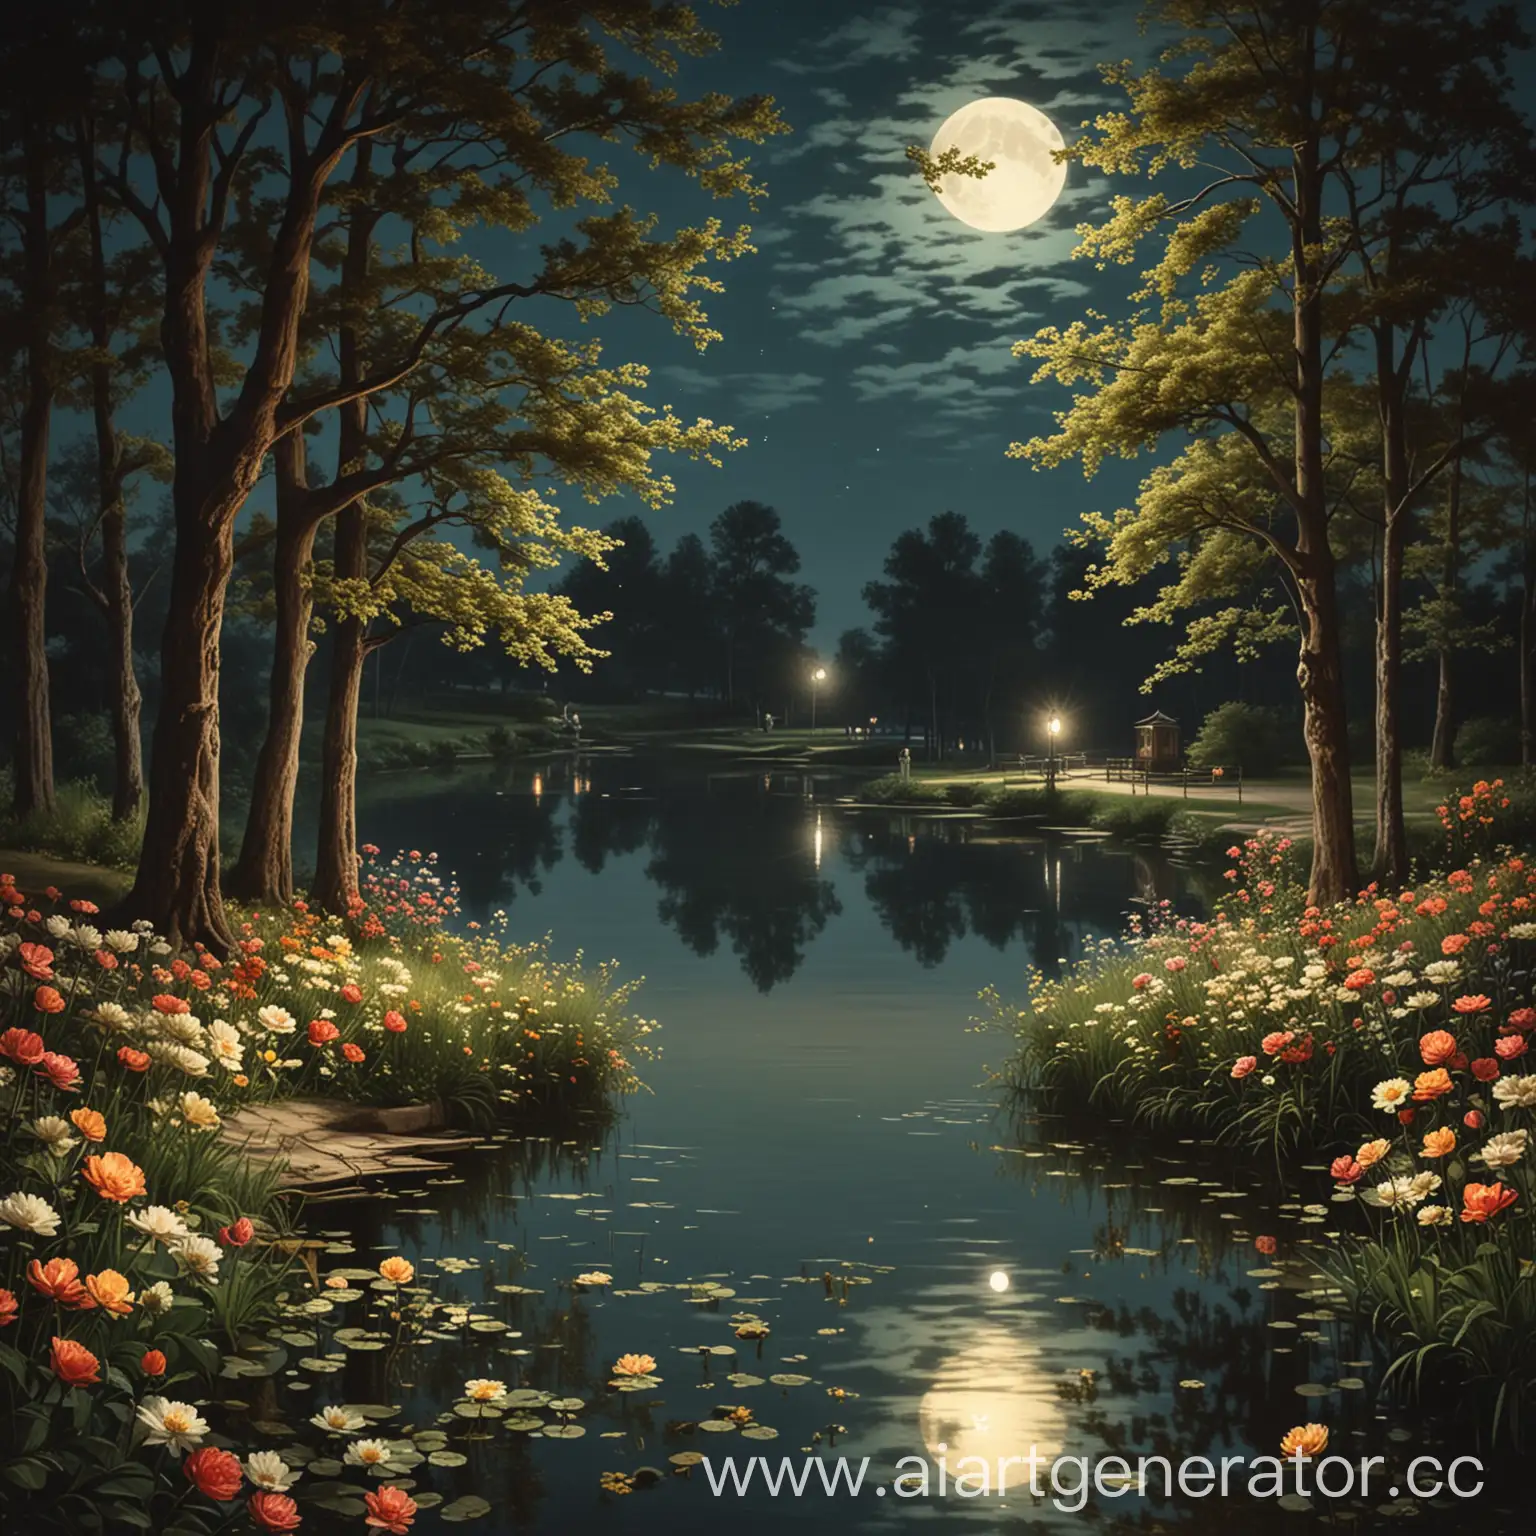 ночной парк начала 20 века с деревьями, луной, озером и цветами, освещенные фонарем